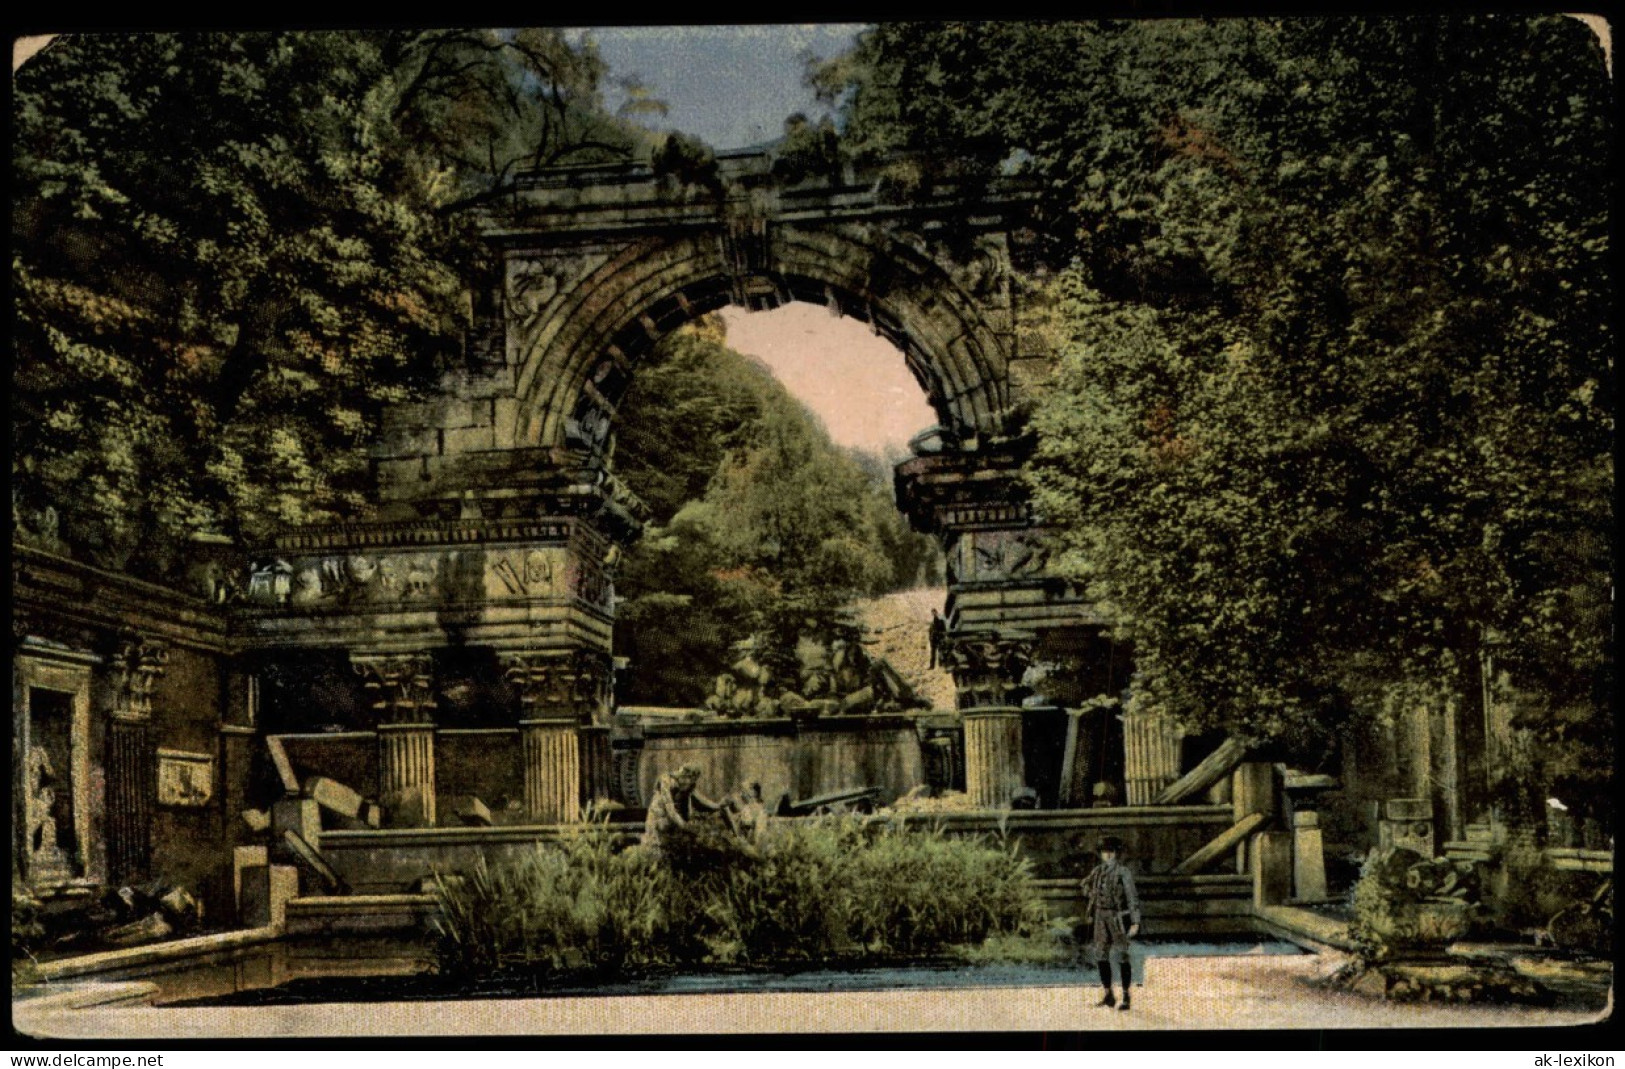 Wien Römische Ruine Ansichtskarte 1914 - Other & Unclassified